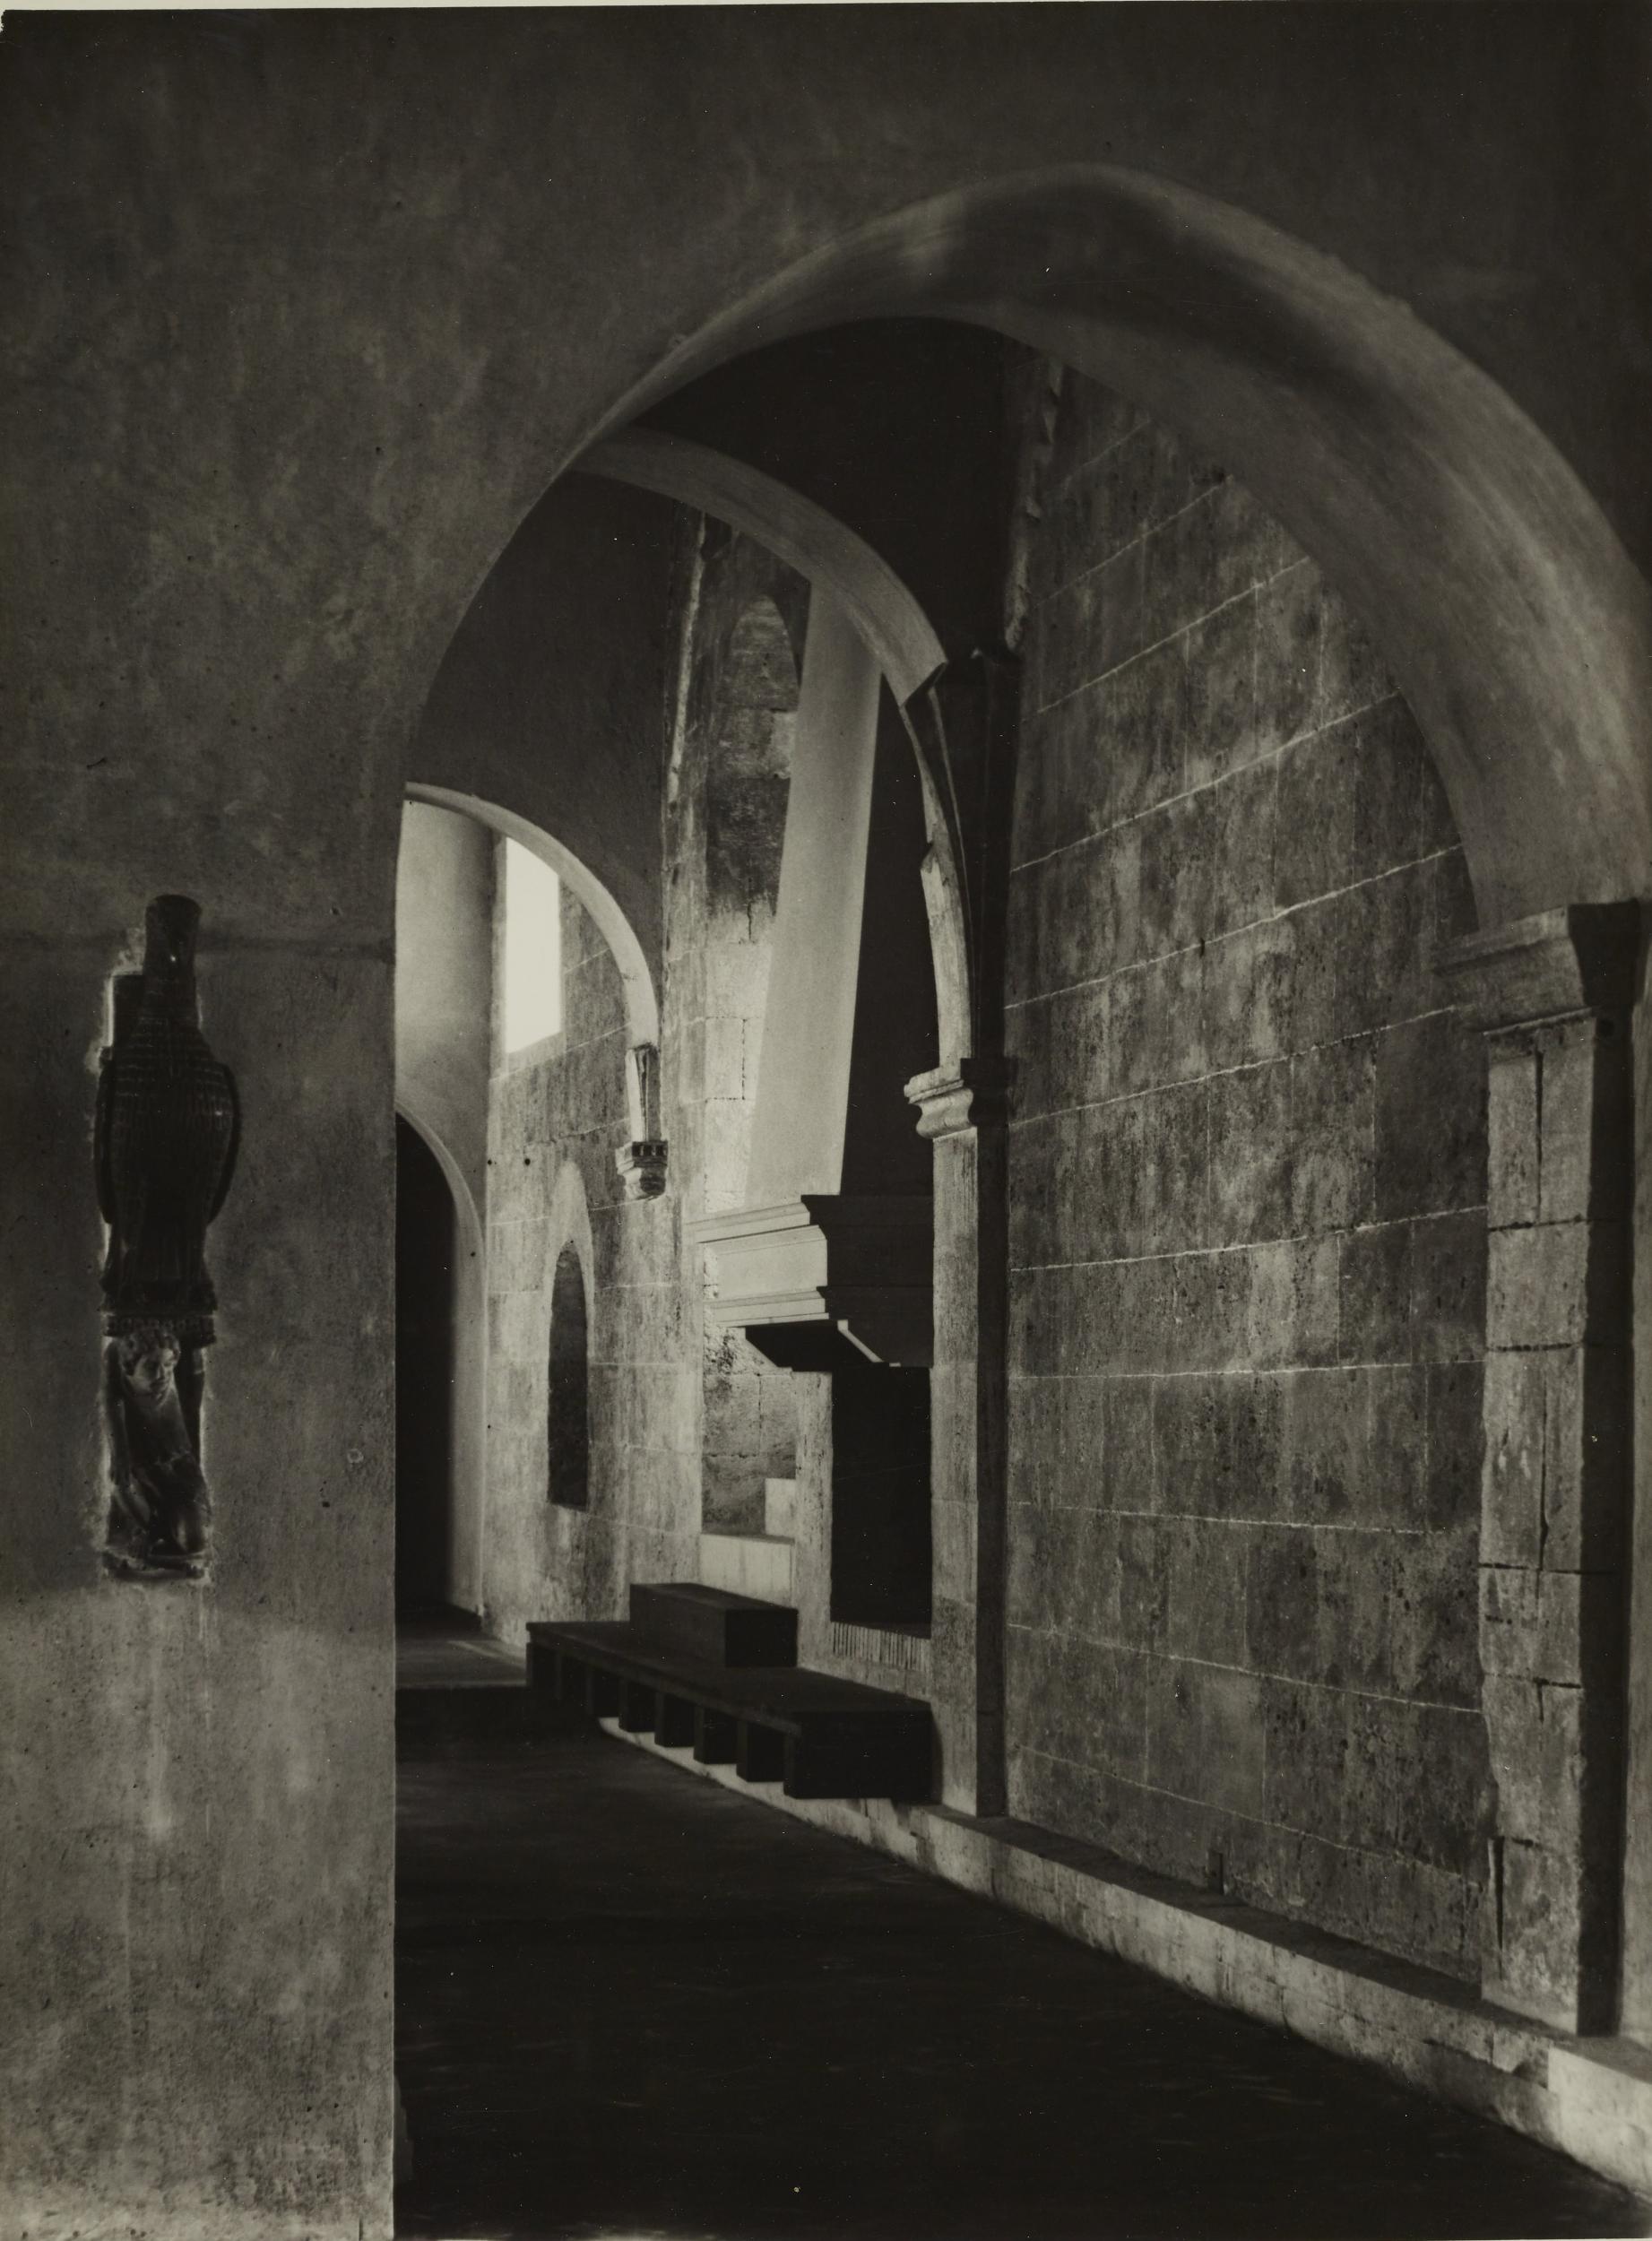 Fotografo non identificato, Bari - Castello Svevo, allestimento della mostra per la XI settimana dei musei, 1968, gelatina ai sali d'argento/carta, MPI6018853